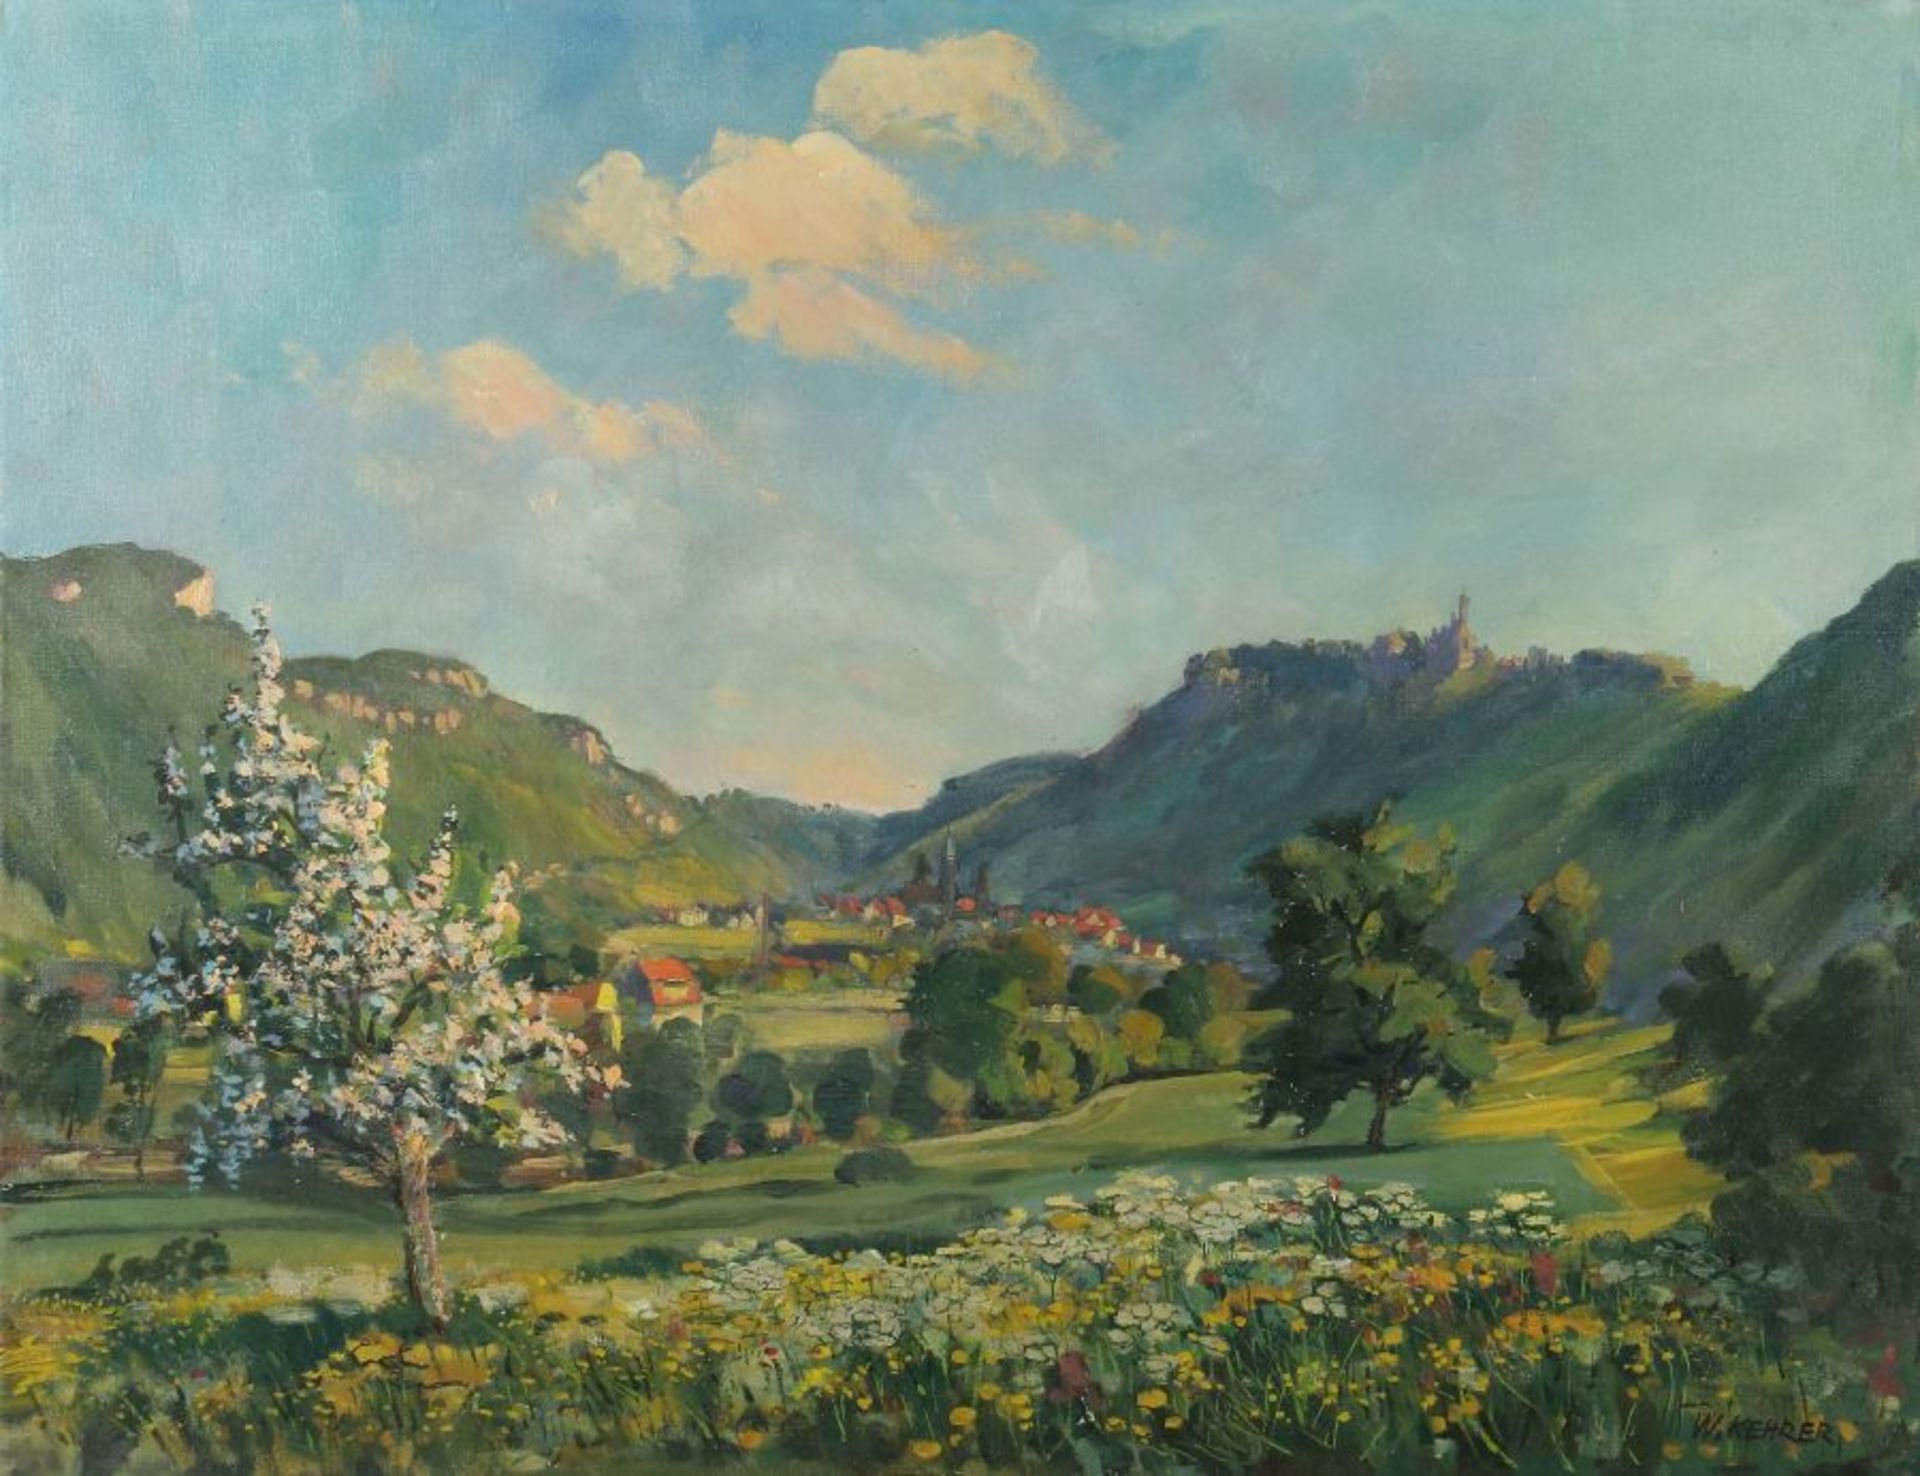 Kehrer, Wilhelm 1892 - 1960, Maler, ansässig in Reutlingen. "Blick auf Liechtenstein",